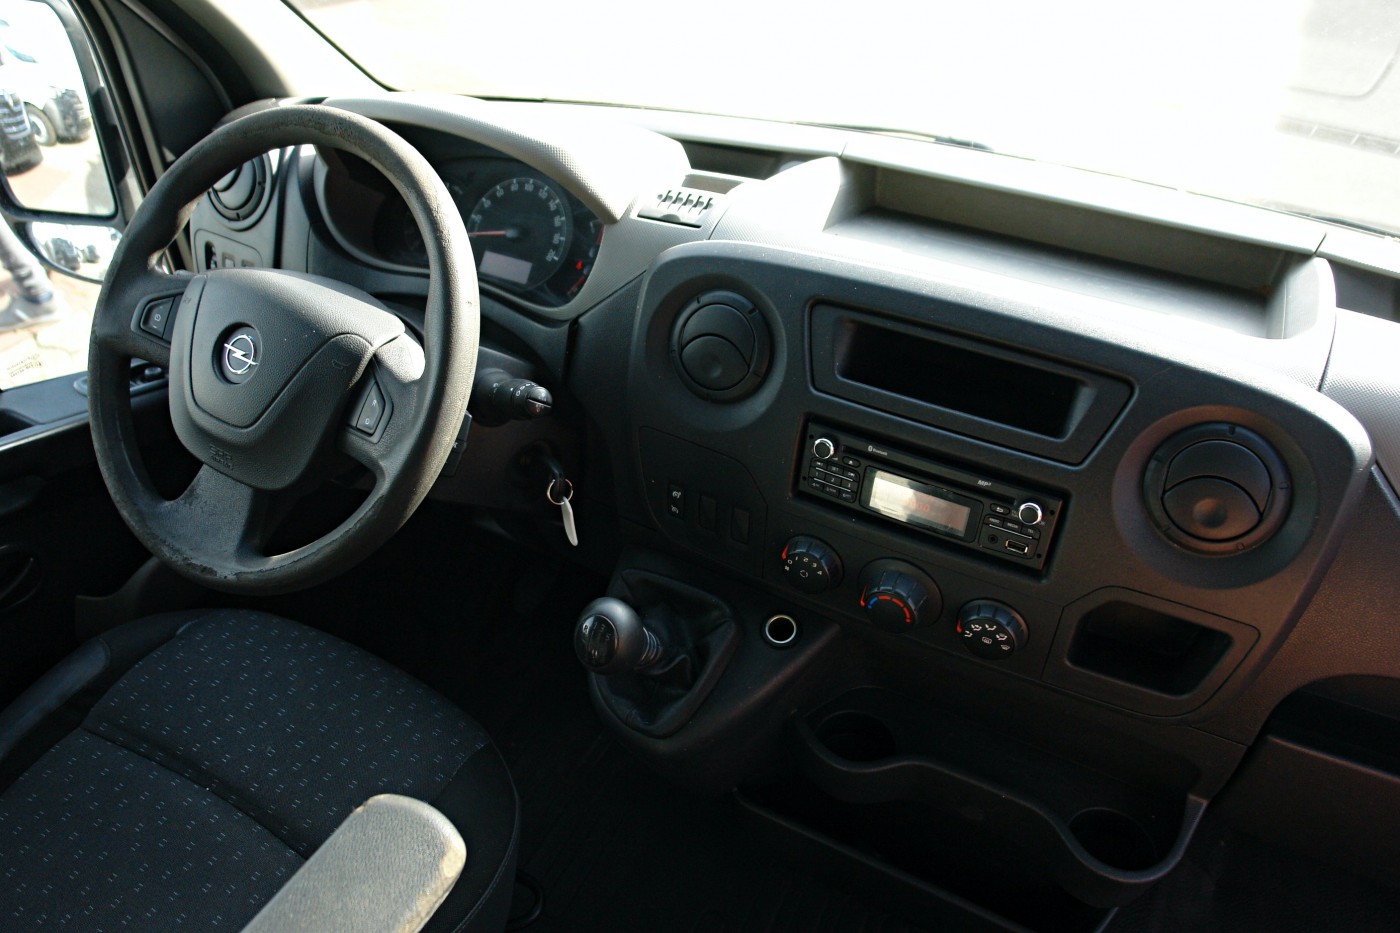 Opel Movano фургон Высотная монтажная платформа, автовышка Time France ET-32-LE 9.6 m EURO 5